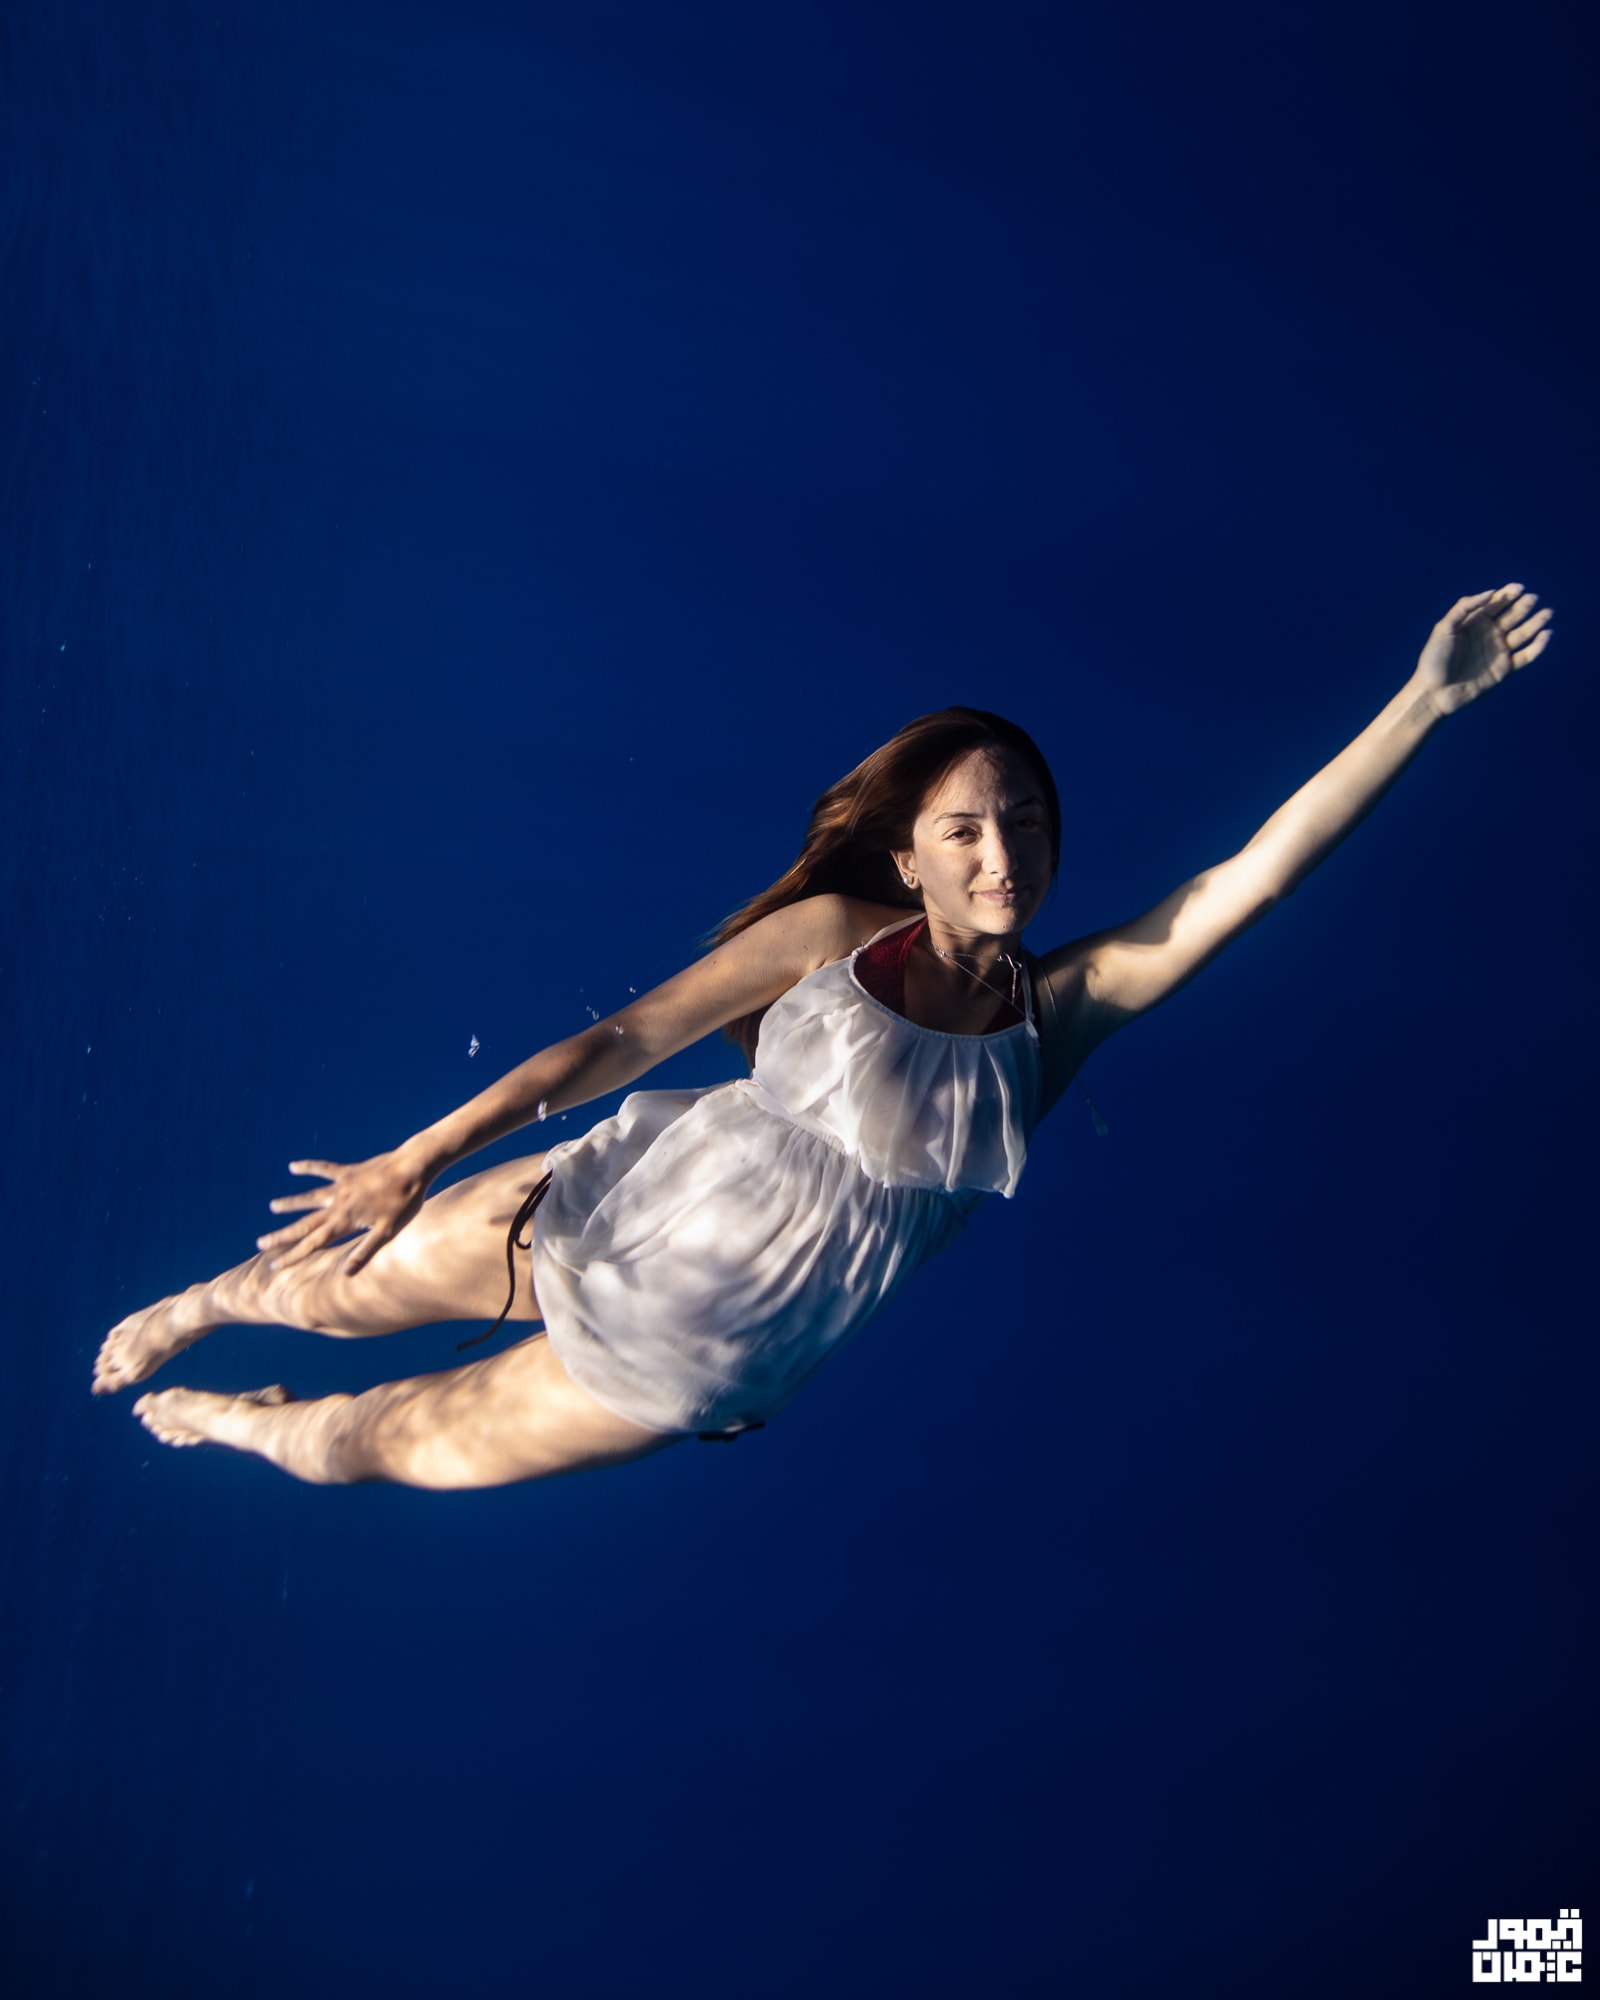 الرقص تحت الماء في مصر.. تجربة "ساحرة" تعزز حرية النساء في التعبير عن أنفسهن